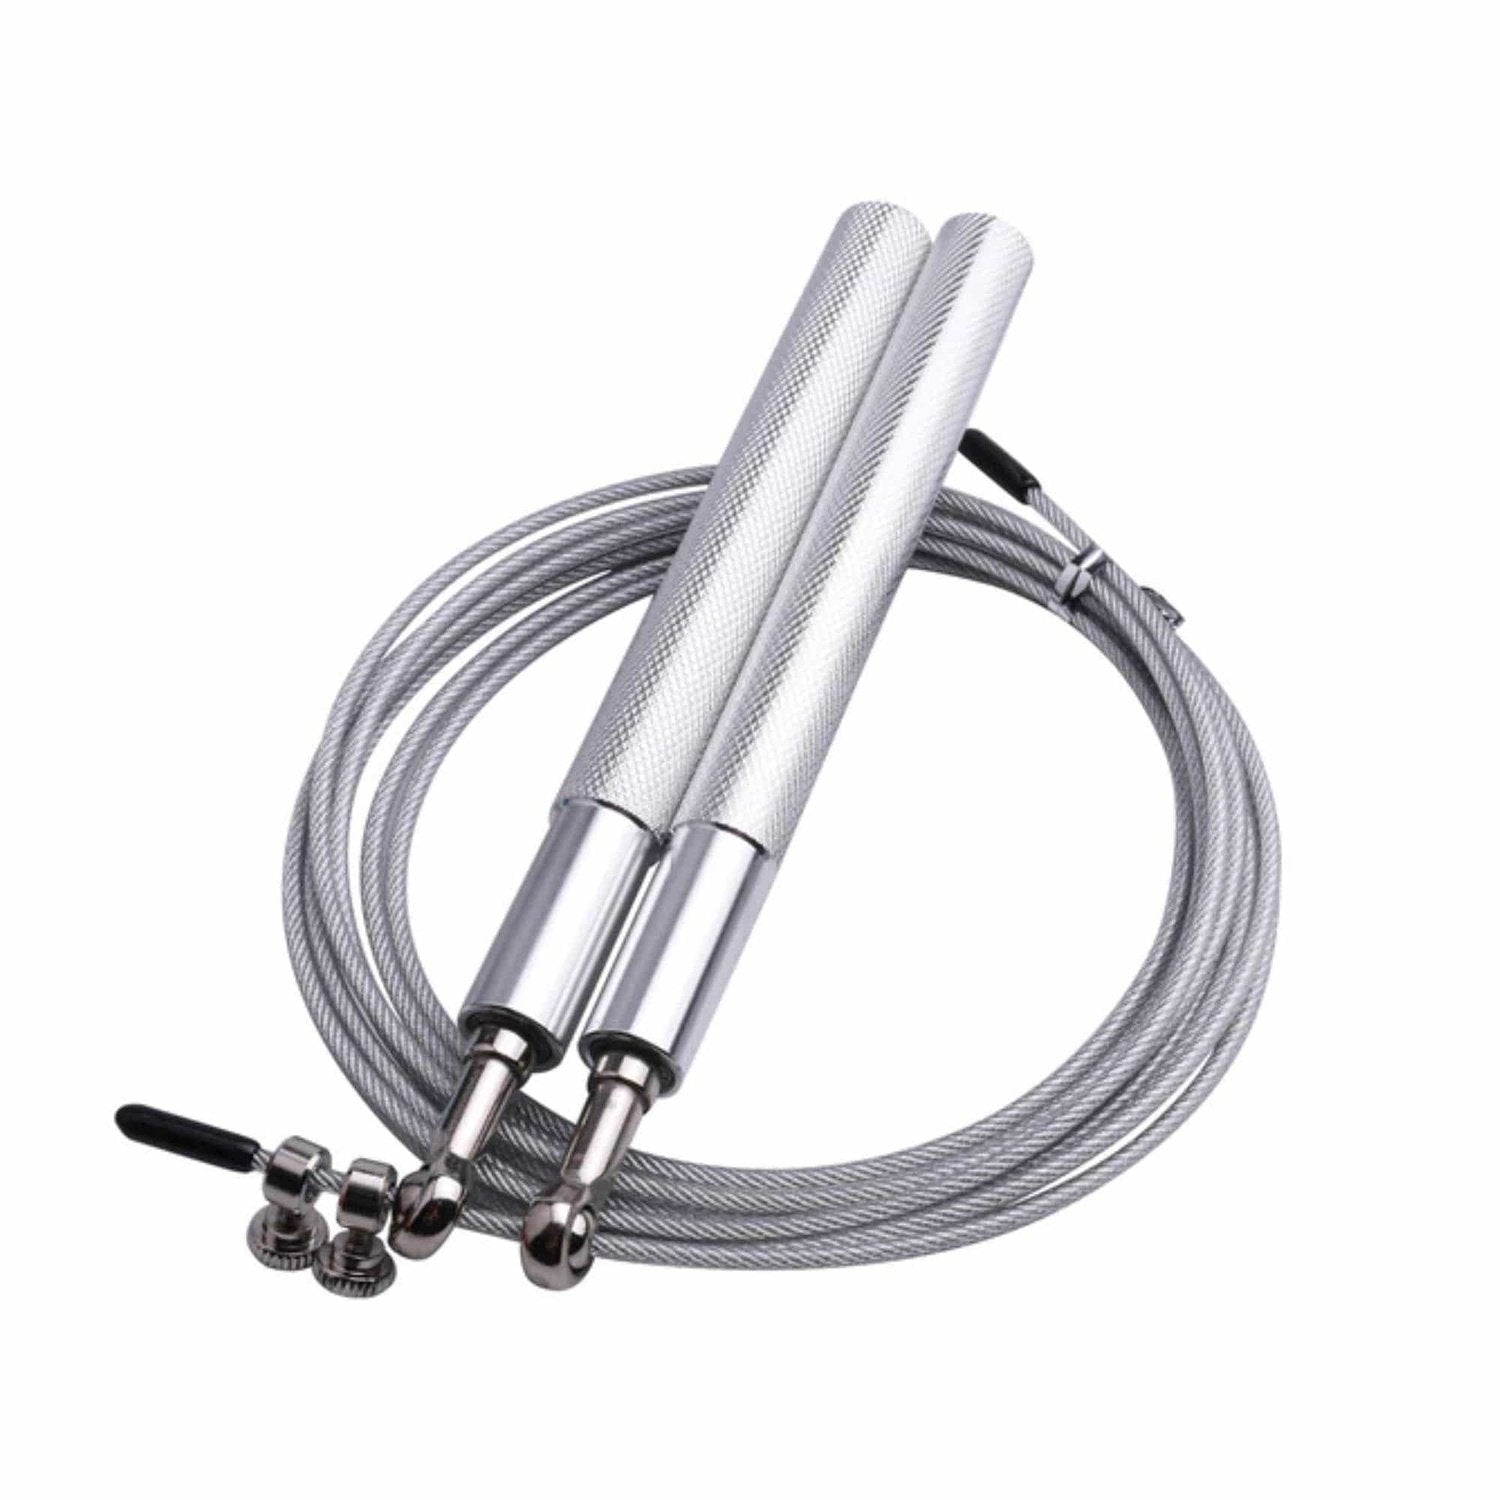 HighPowered Light Aluminium Jump Rope (Einsteigerspringseil) Silber kaufen bei HighPowered.ch